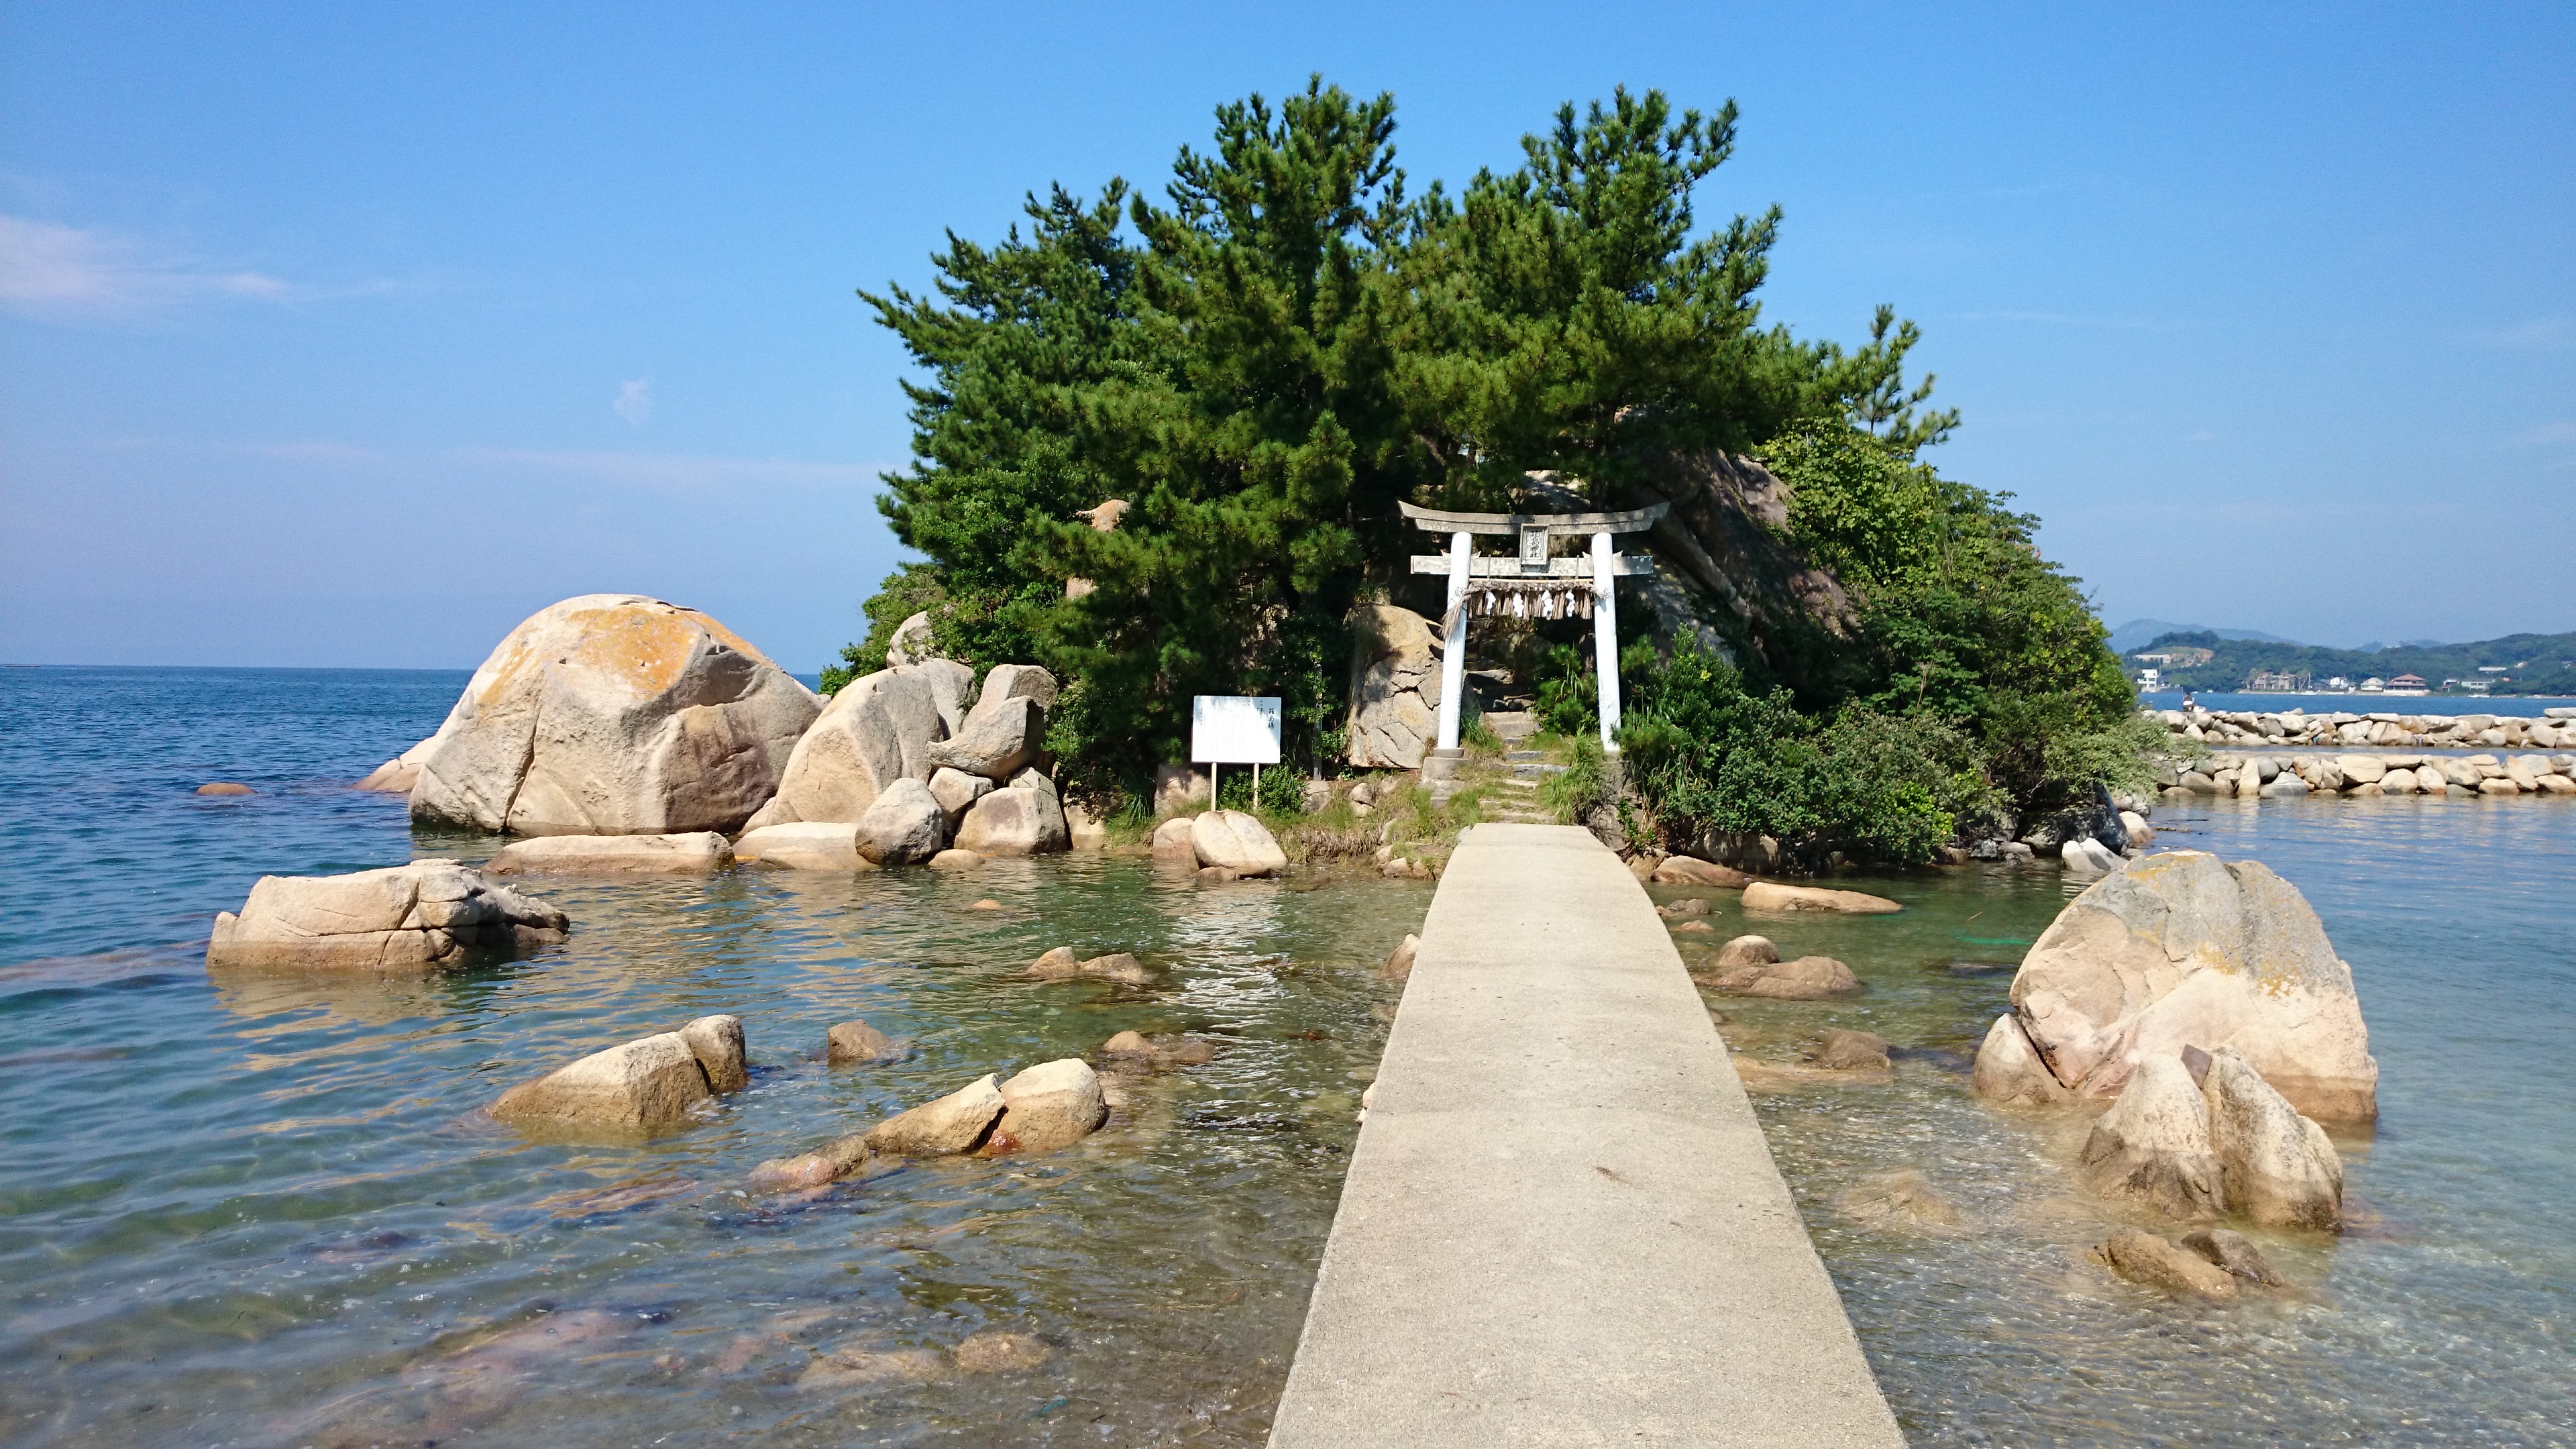 良縁を結びたい方は必見!! 愛の神様を祀る糸島市の箱島神社は、恋愛成就のパワースポットです。